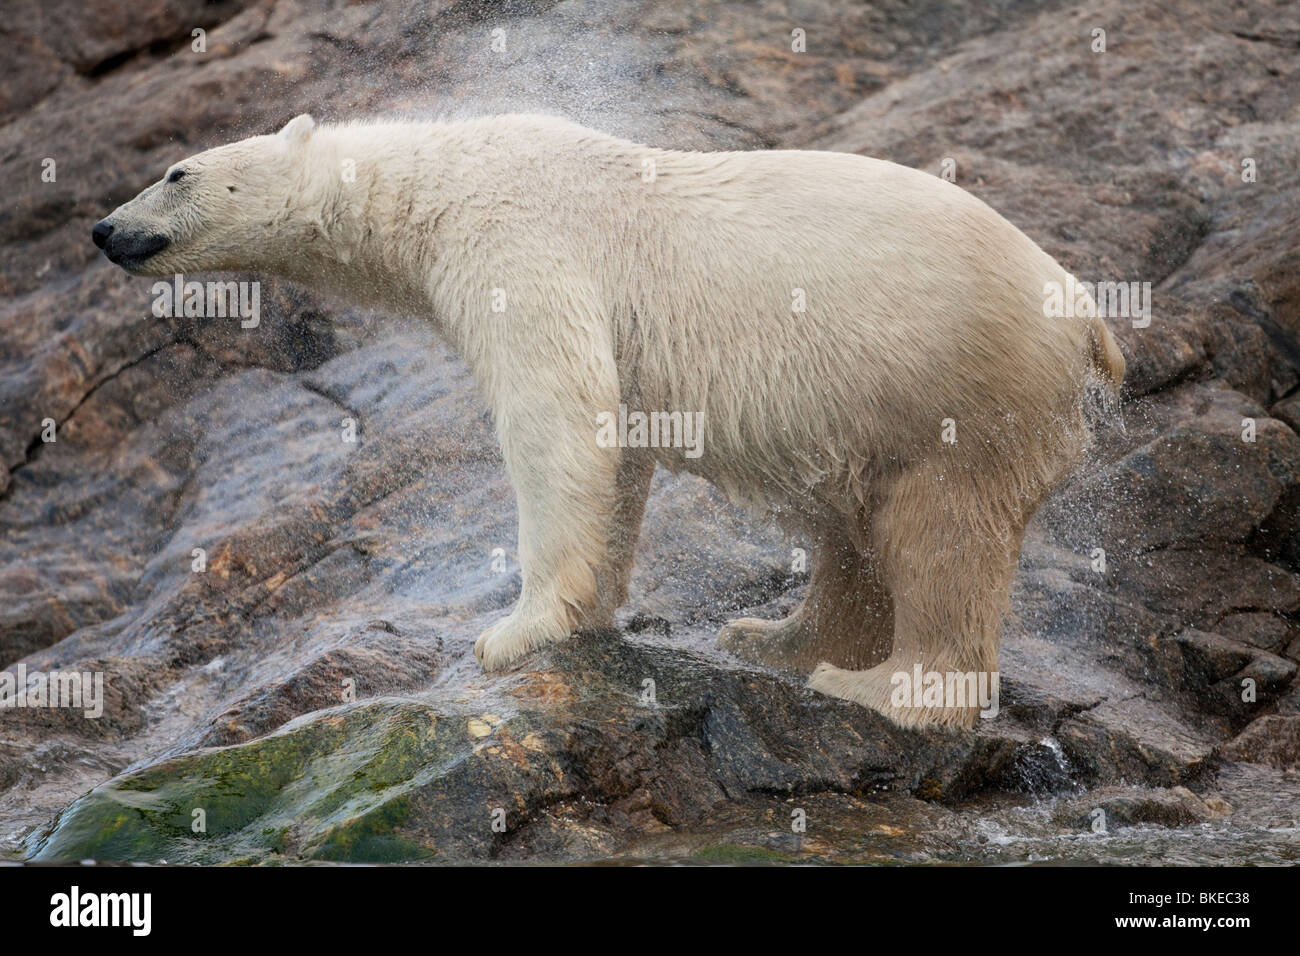 Norvegia Isole Svalbard, isola Spitsbergen, orso polare (Ursus maritimus) scuote il acqua dopo che emergono dal mare sulla costa rocciosa Foto Stock